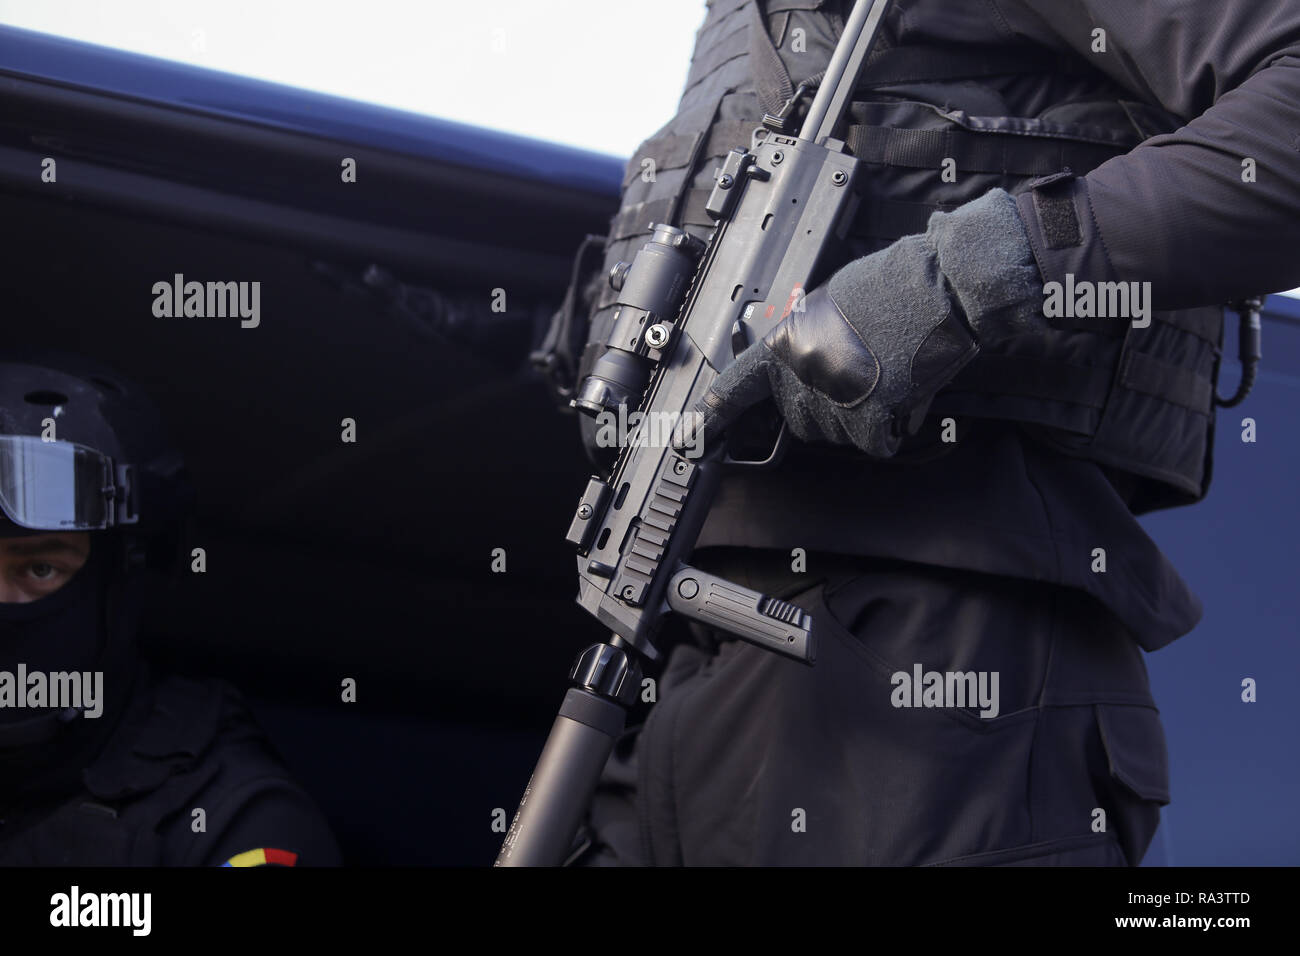 Bucarest, Rumania - Diciembre 1, 2018: la lucha contra el terrorismo oficial del servicio de inteligencia rumano, armados con un MP7 Heckler & Koch Metralleta, Foto de stock